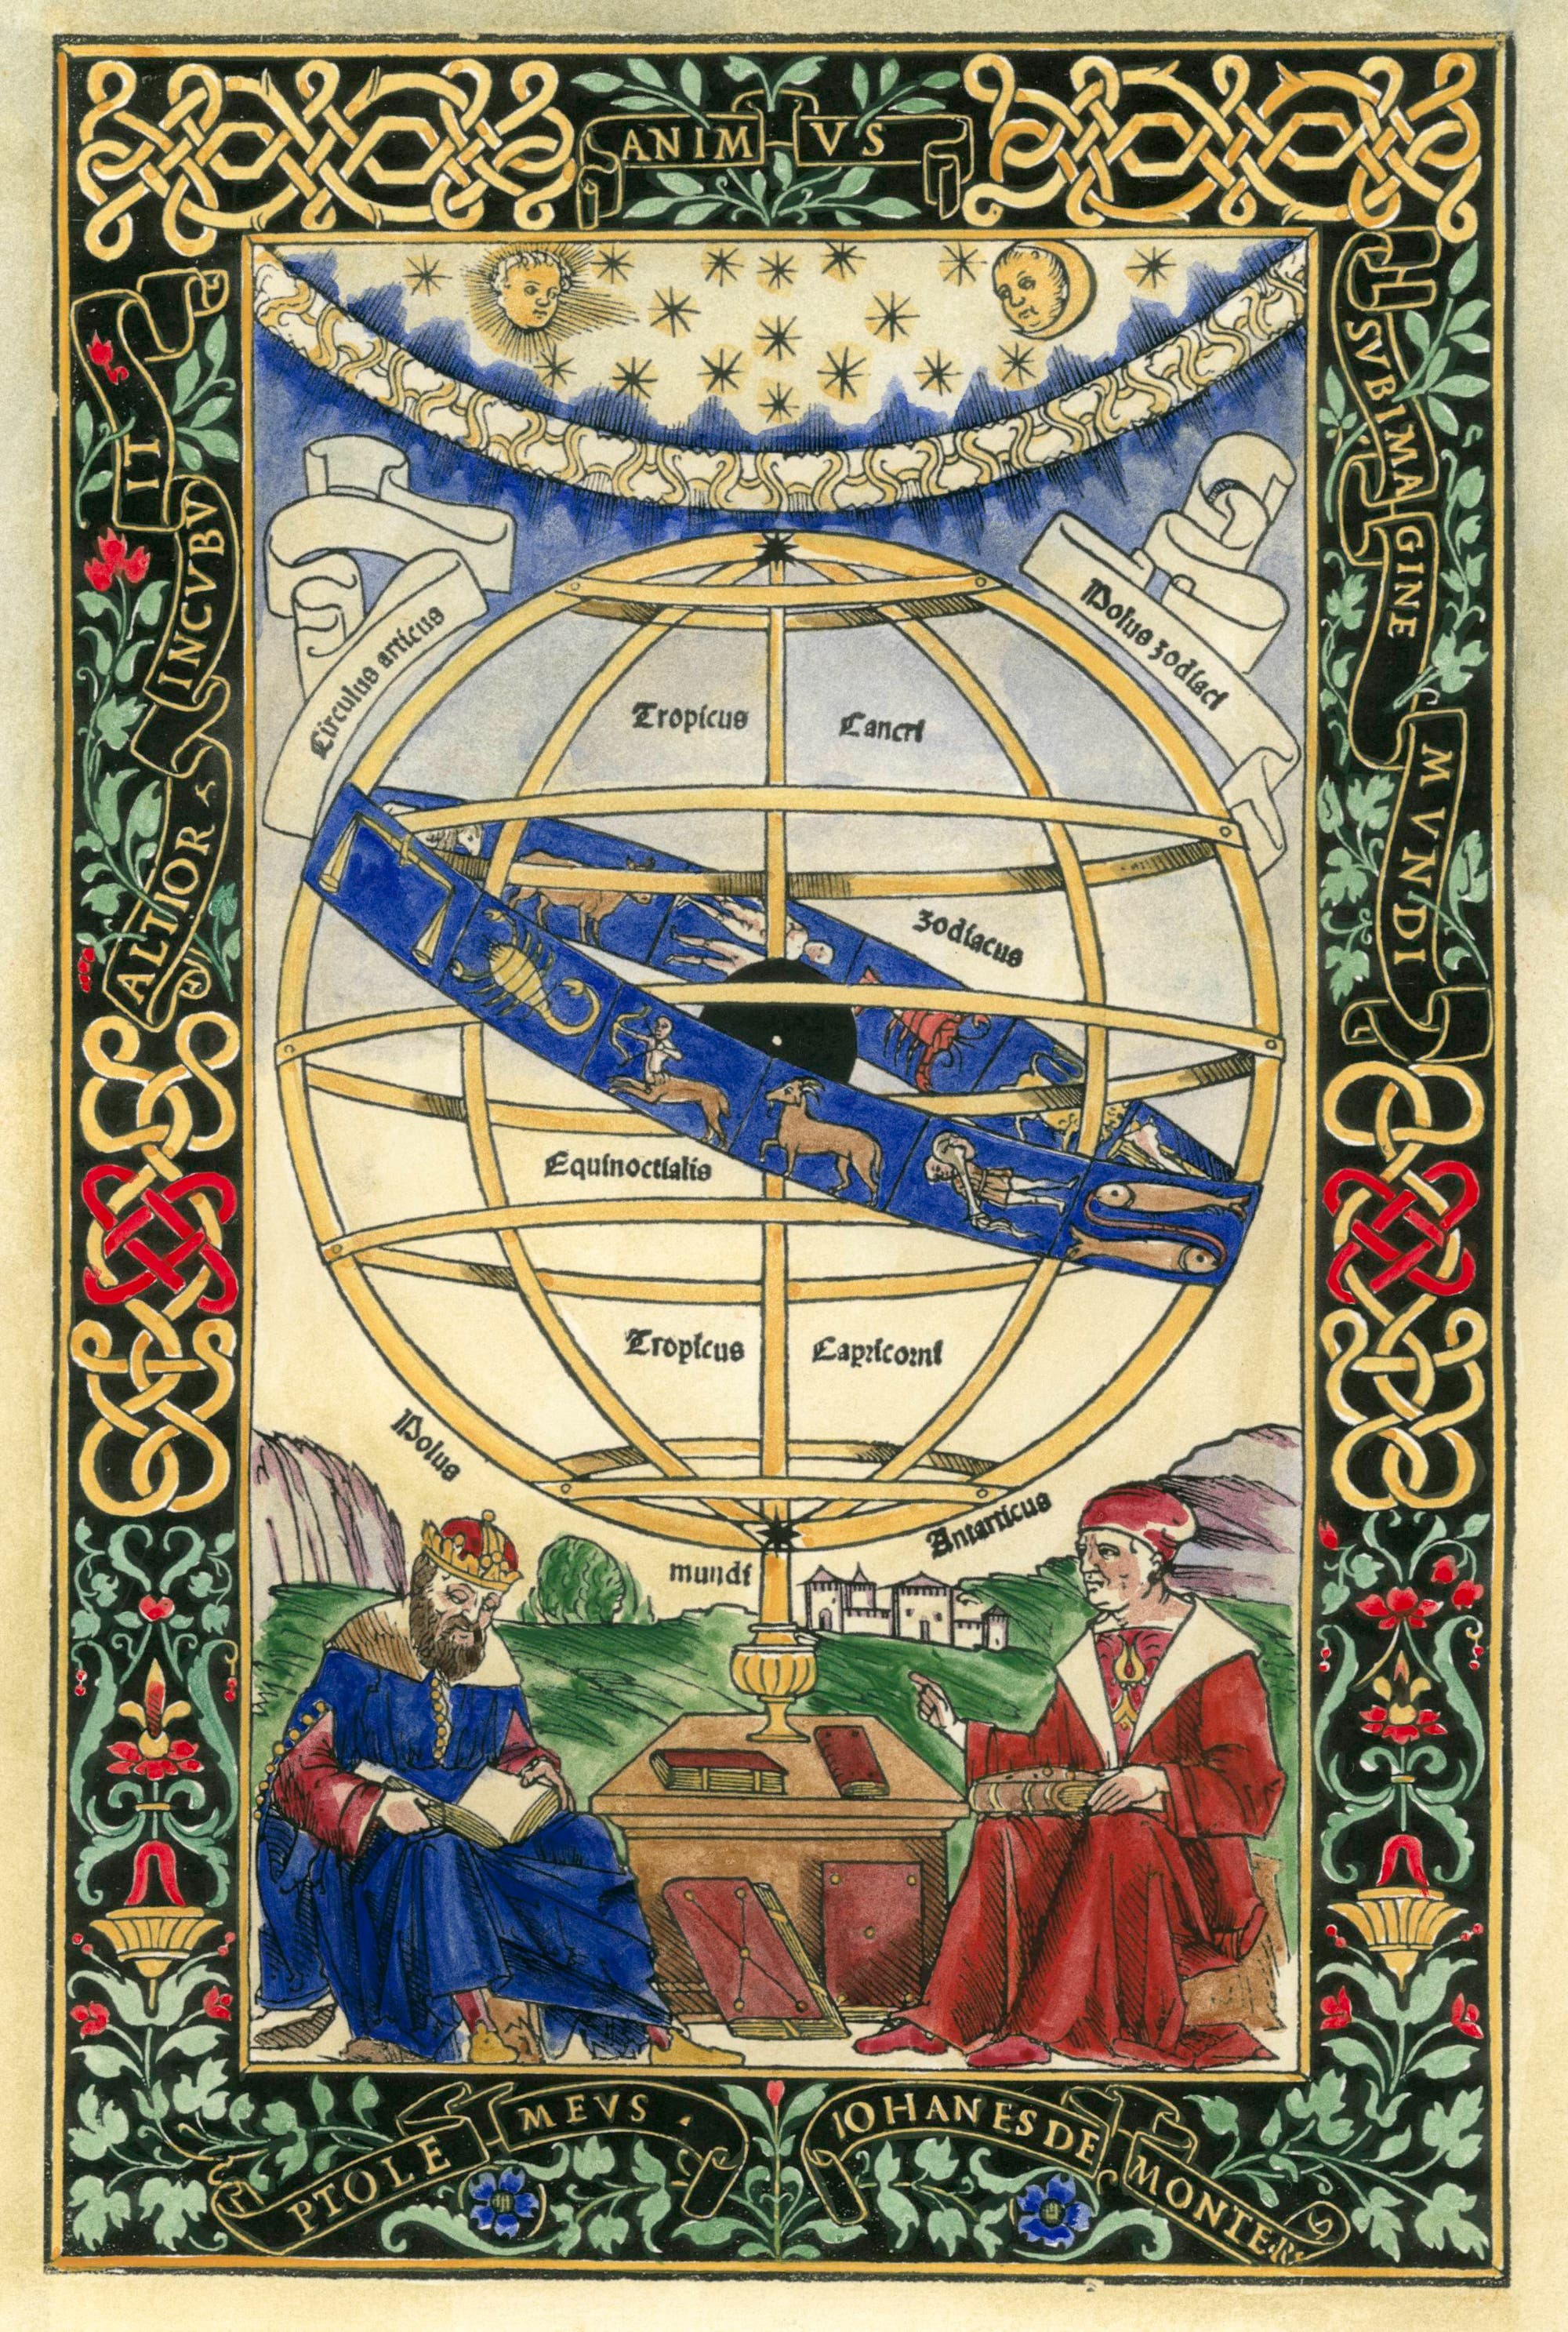 Diese später kolorierte Abbildung ziert die Titelseite von Regiomontanus' Werk »Epytoma in almagestum Ptolemaei« aus dem Jahr 1496.